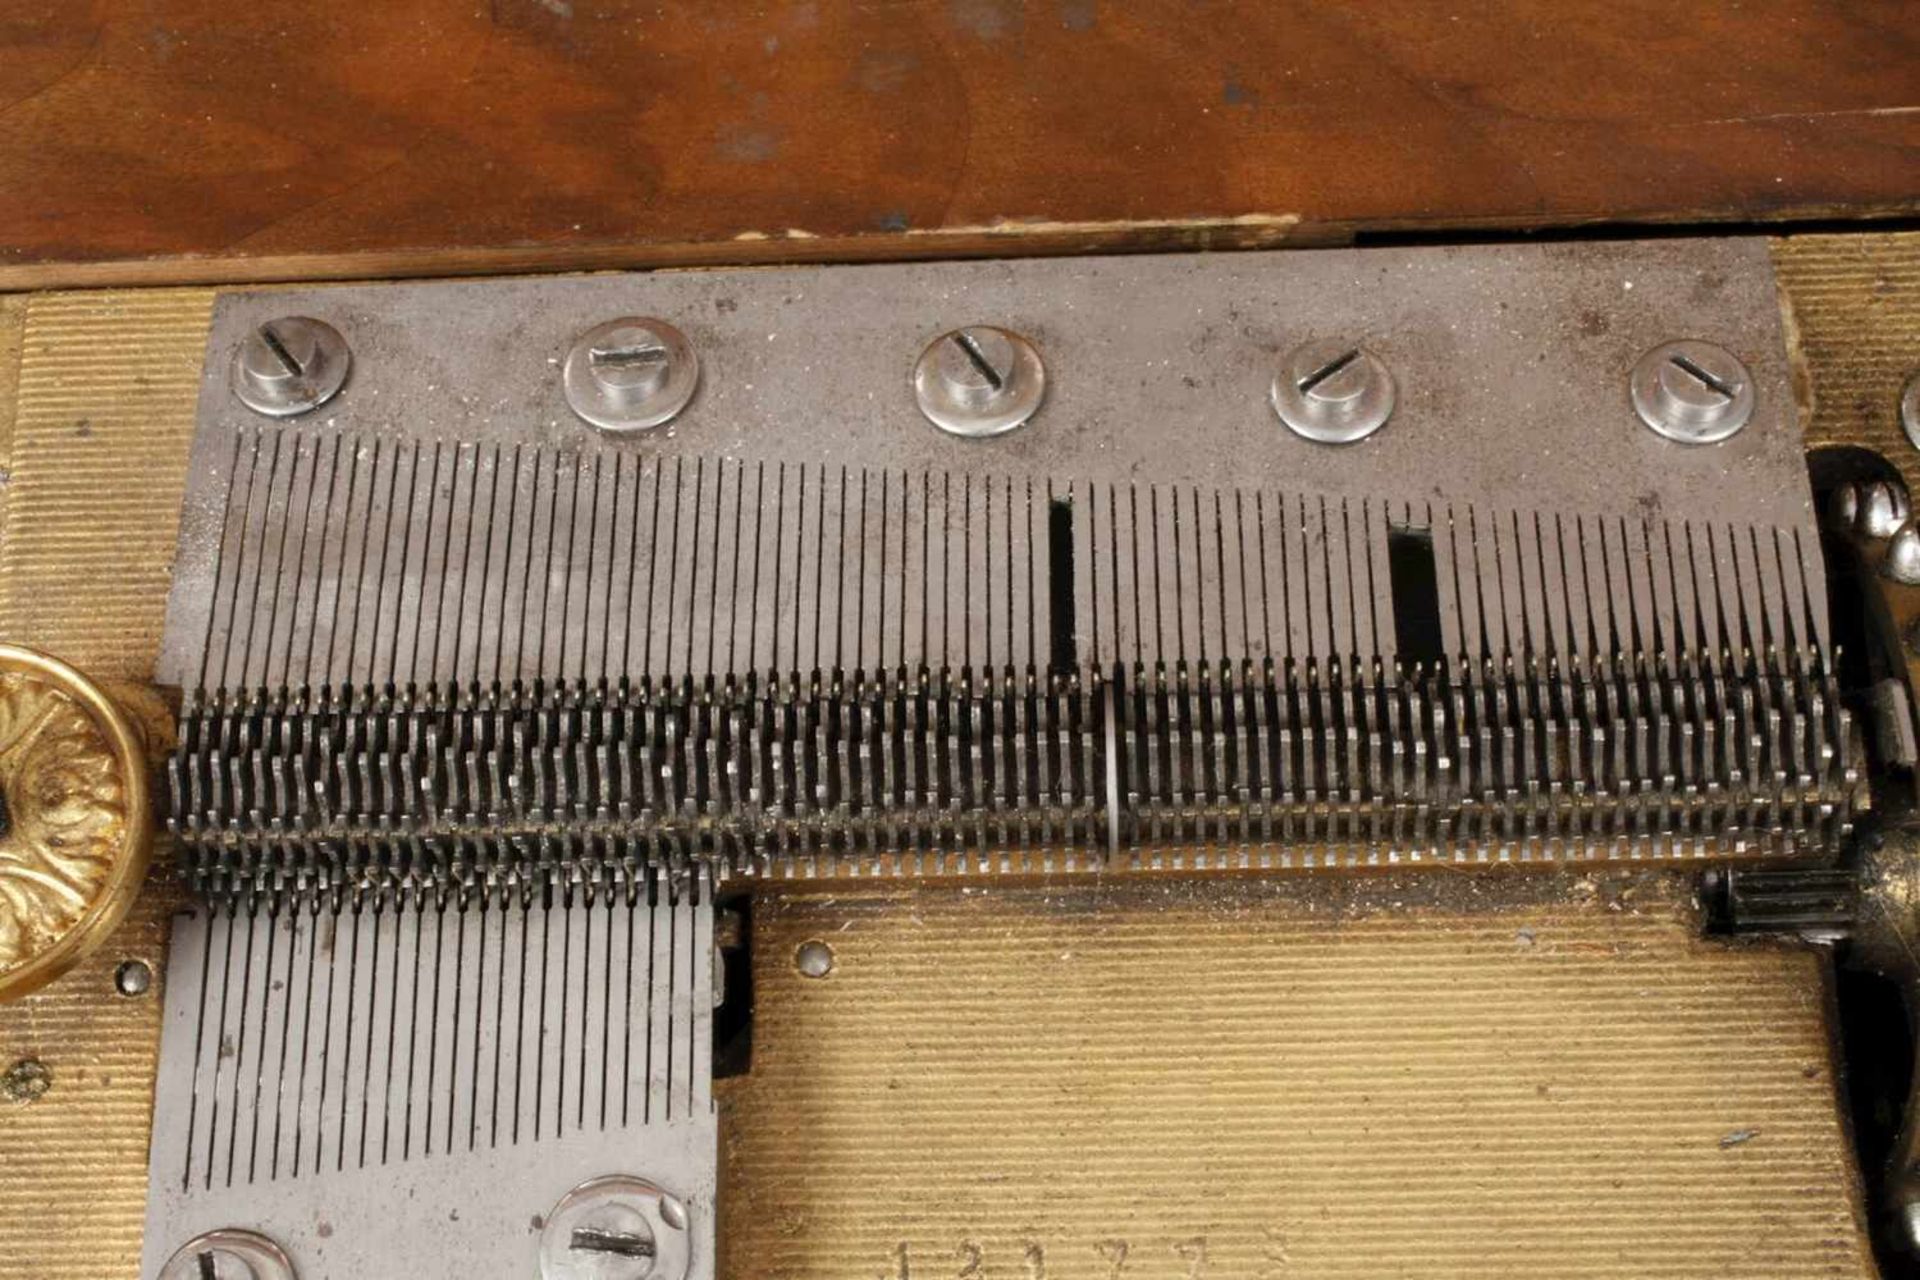 Große Plattenspieldose Polyphonum 1890, gemarkt, Seriennummer 121998?, palisanderfurniertes Gehäuse, - Bild 4 aus 6